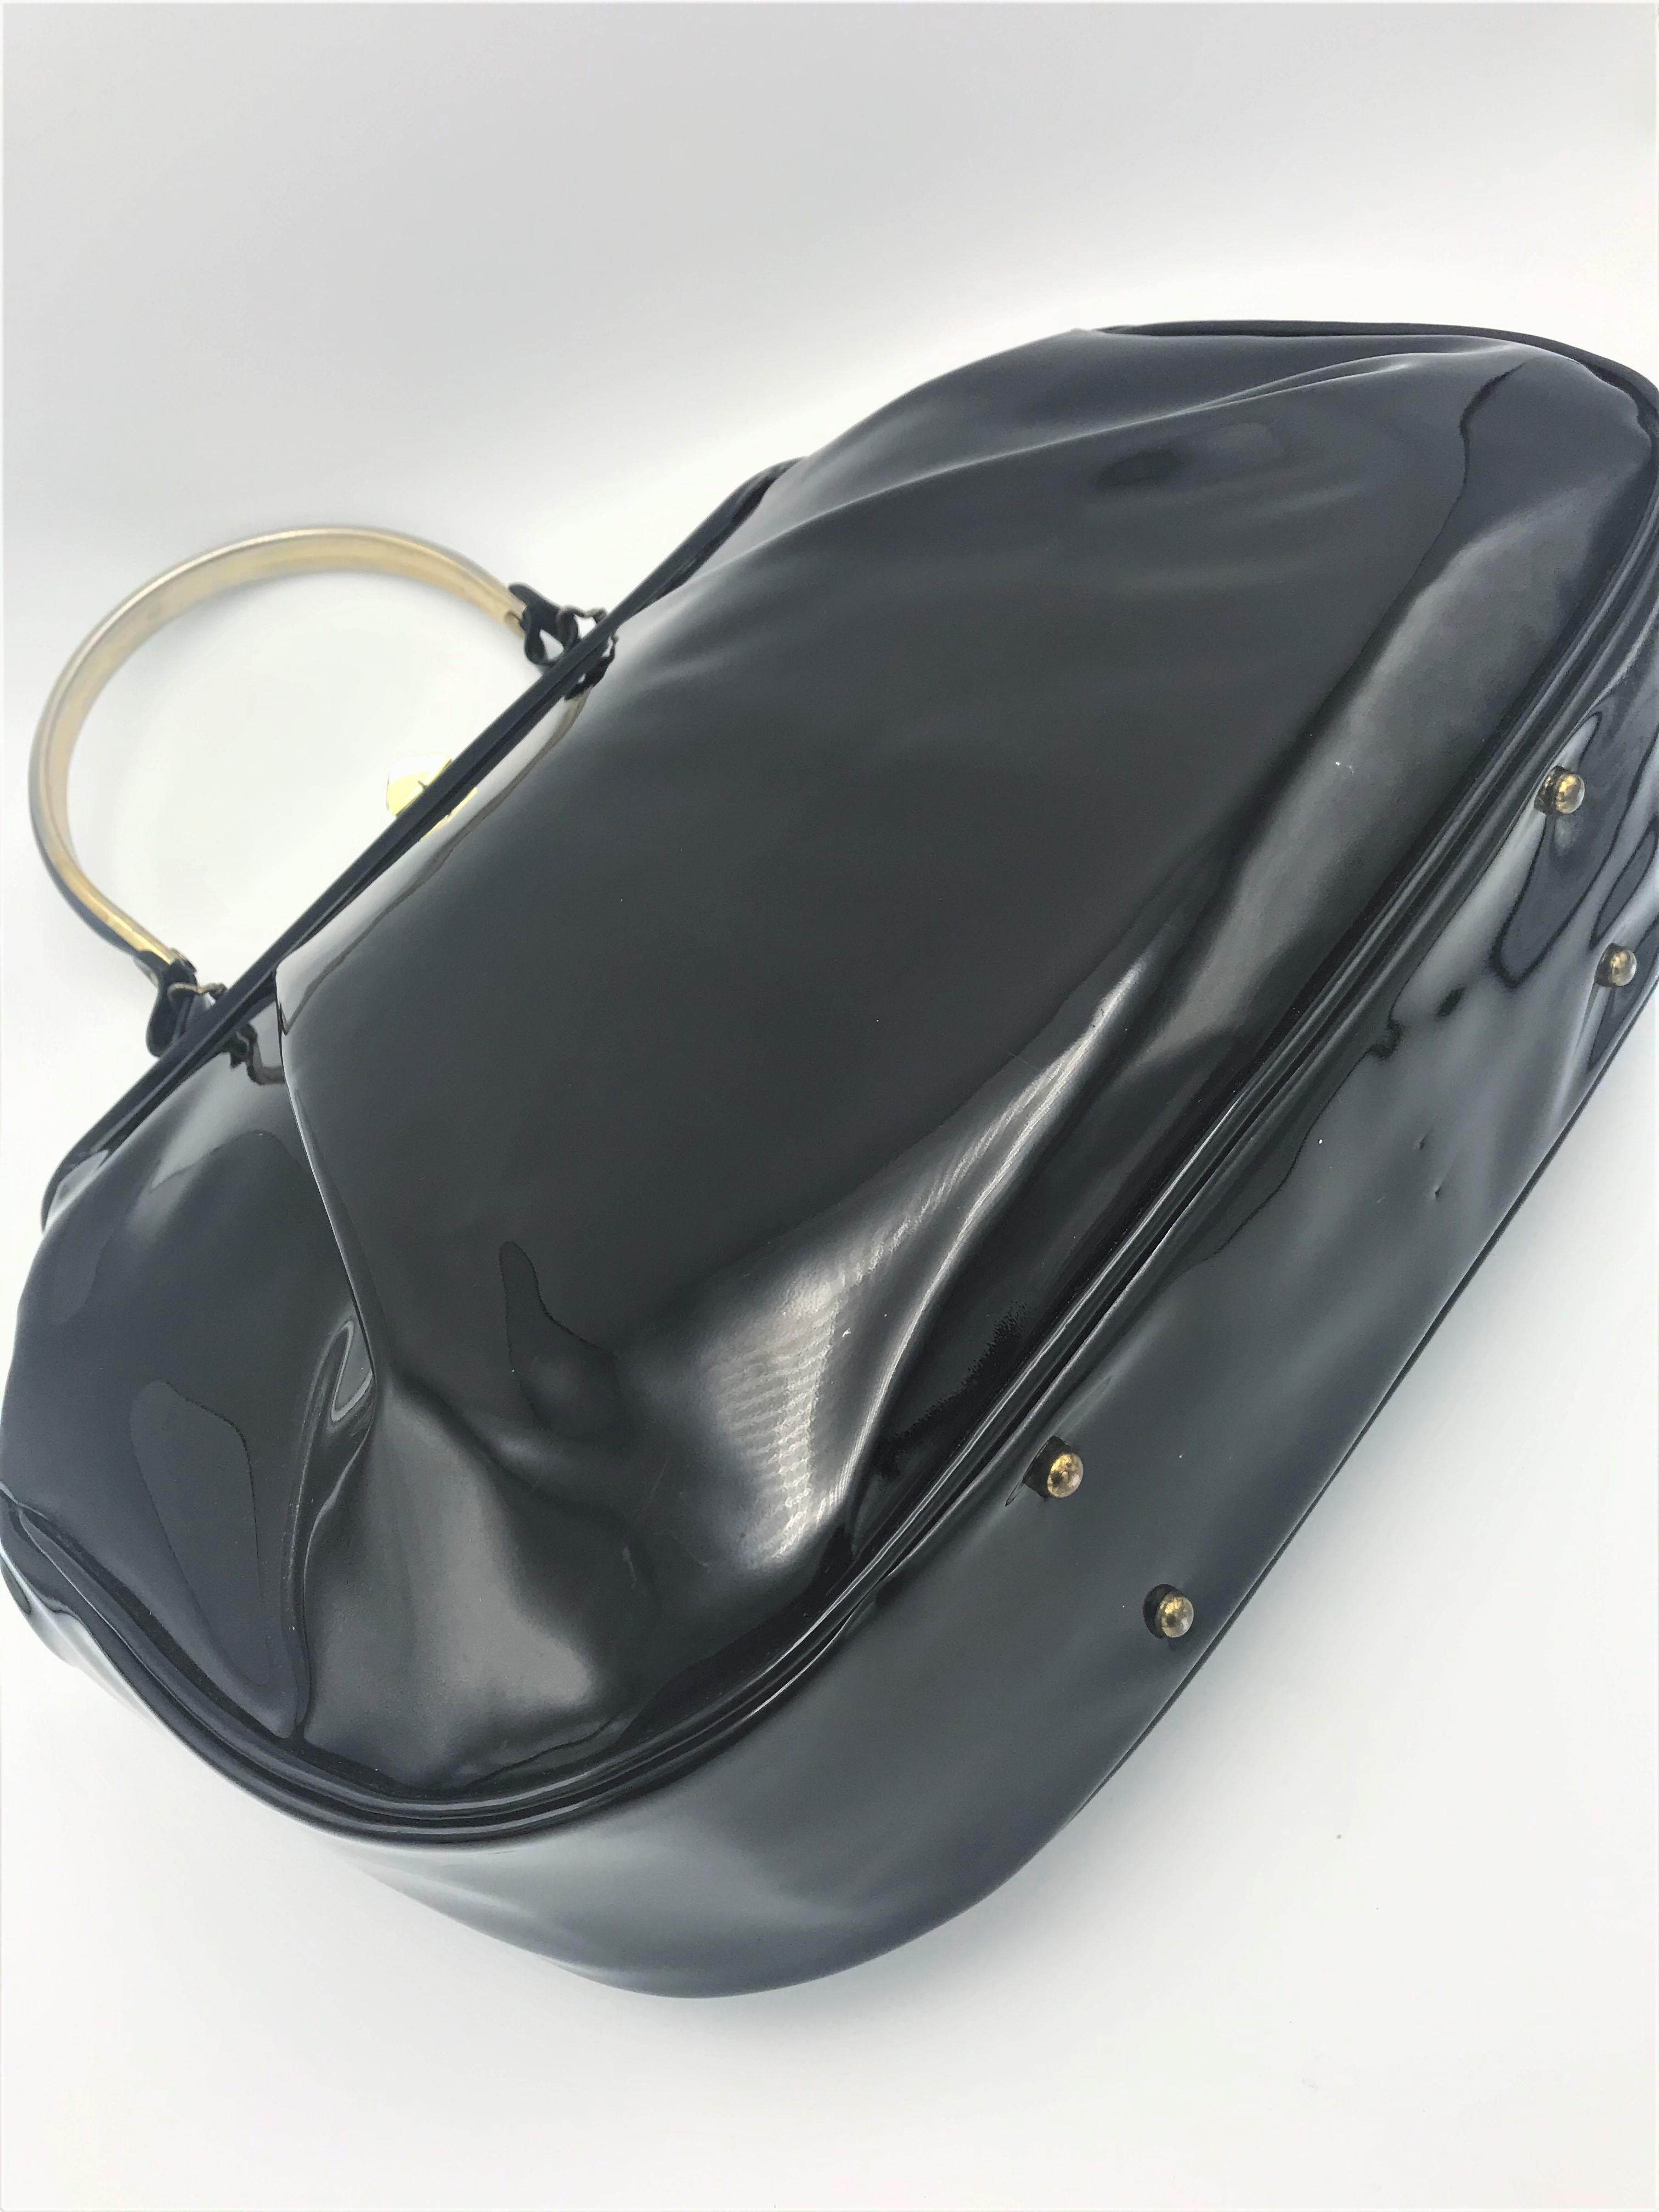 Un sac à main noir distinctif fait d'un beau cuir verni bien conservé, avec une anse de 30 cm de long. L'ouverture est de 30 cm de large, le devant et le dos du sac ont un pli de 3 cm de profondeur. Doublure intérieure en tissu noir et blanc et une